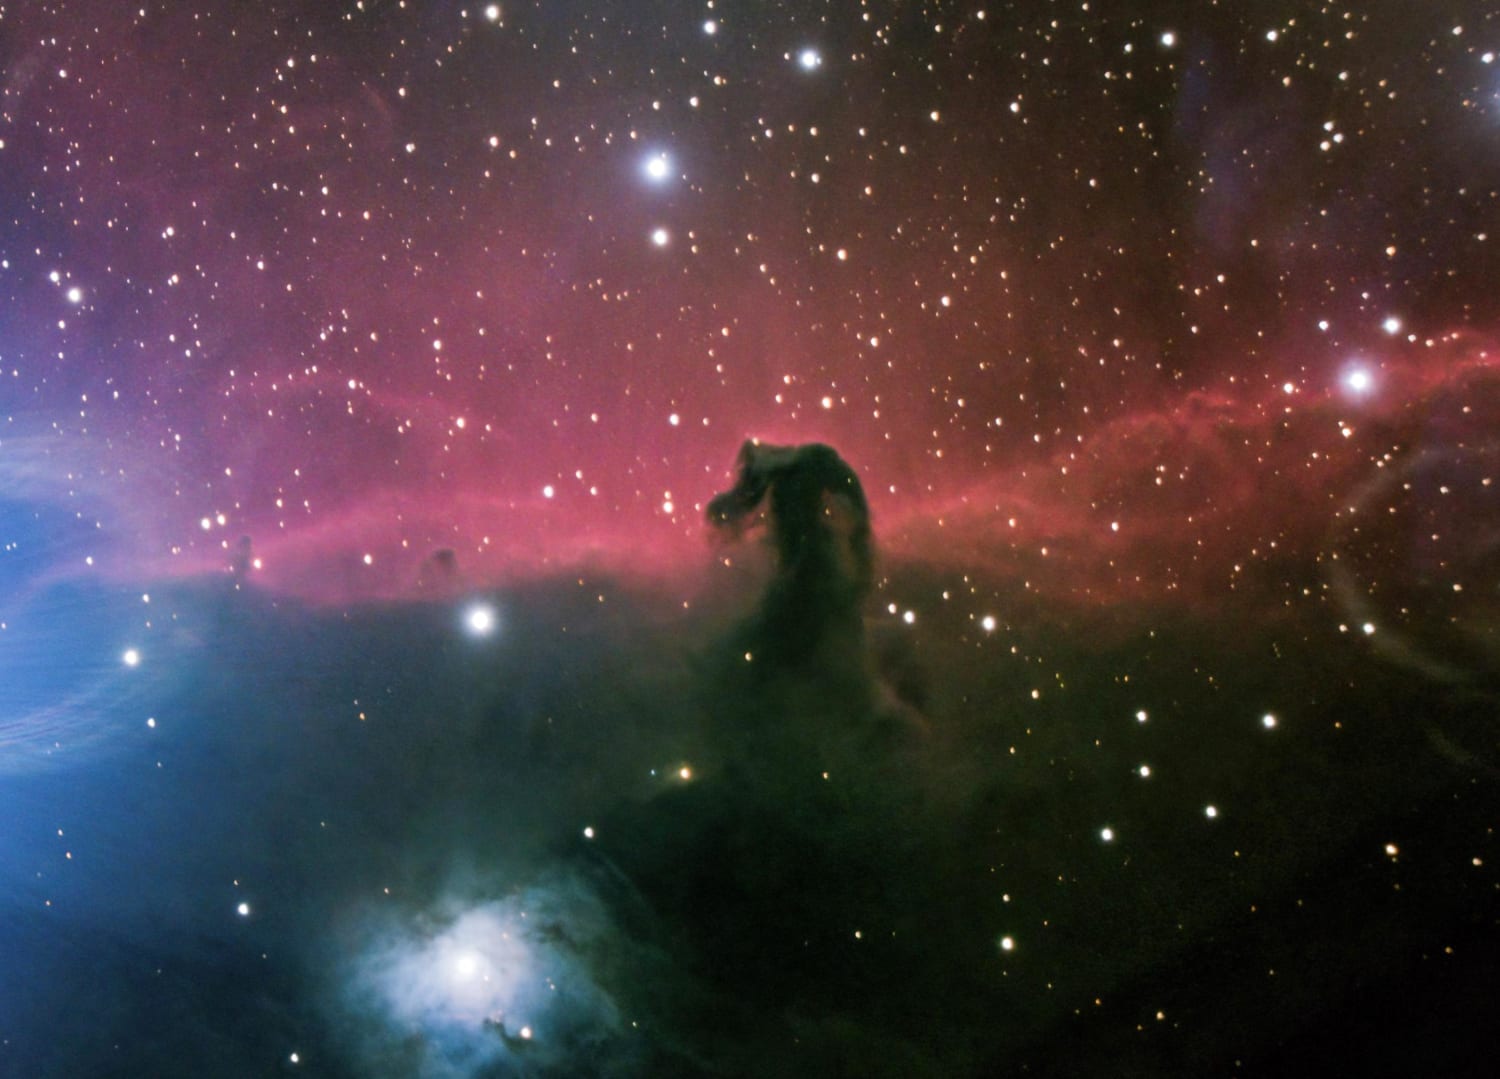 Closeup of The Horsehead Nebula - B33